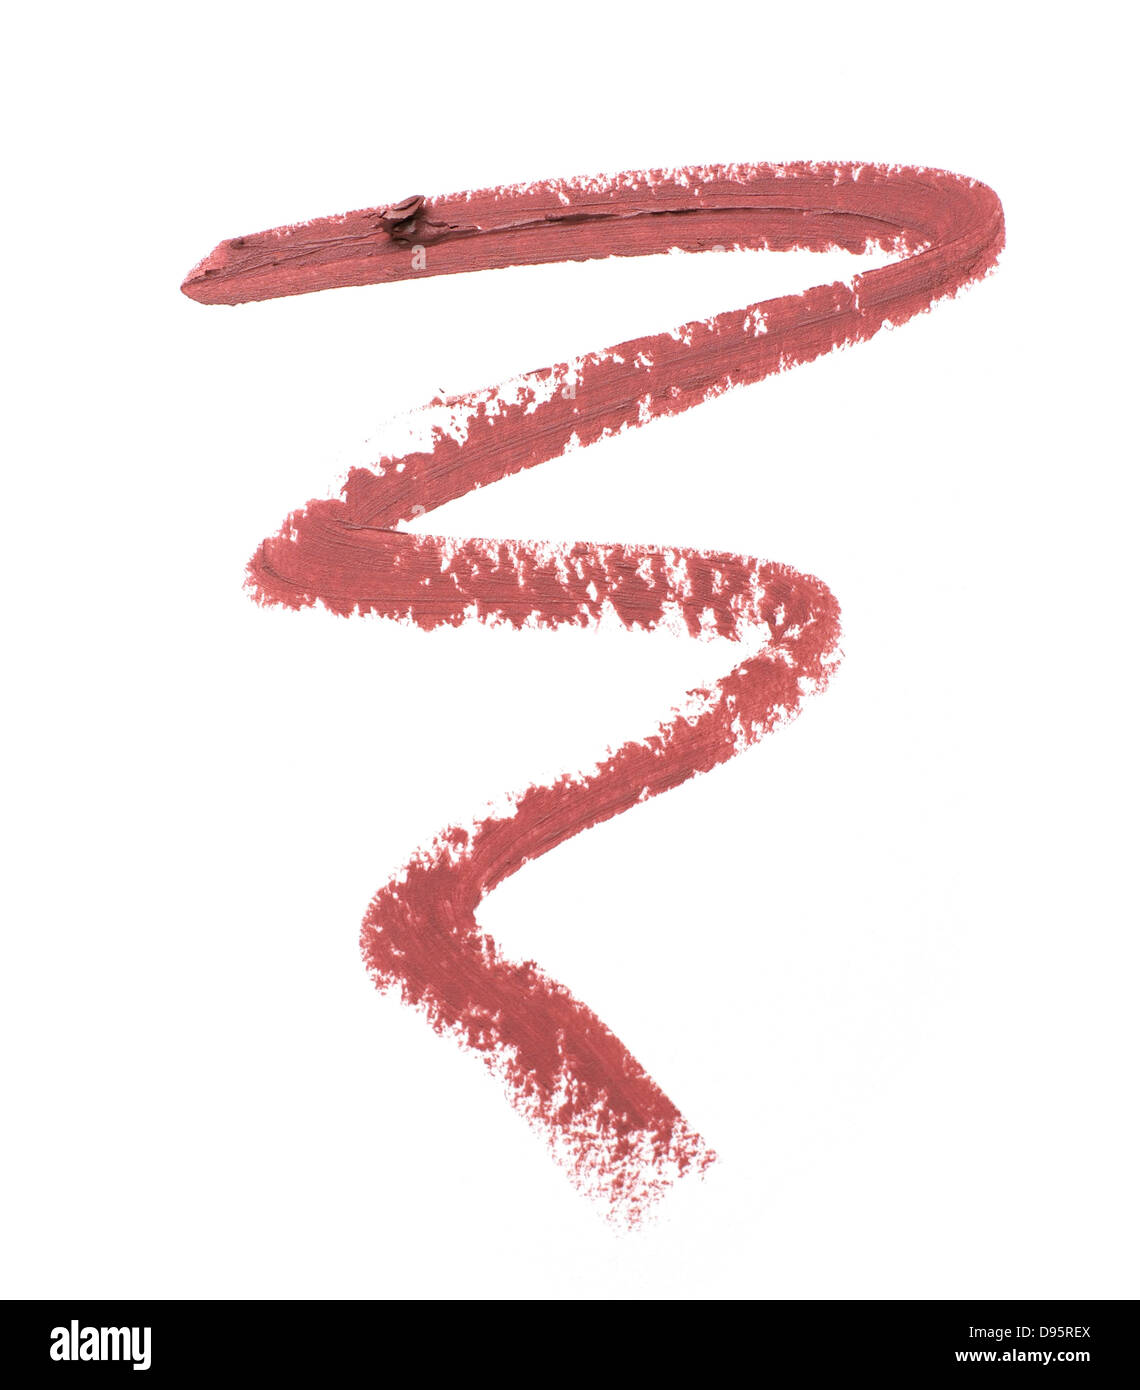 Wellenlinie von rot Lip Liner Lippenstift auf einem weißen Hintergrund ausschneiden Stockfoto